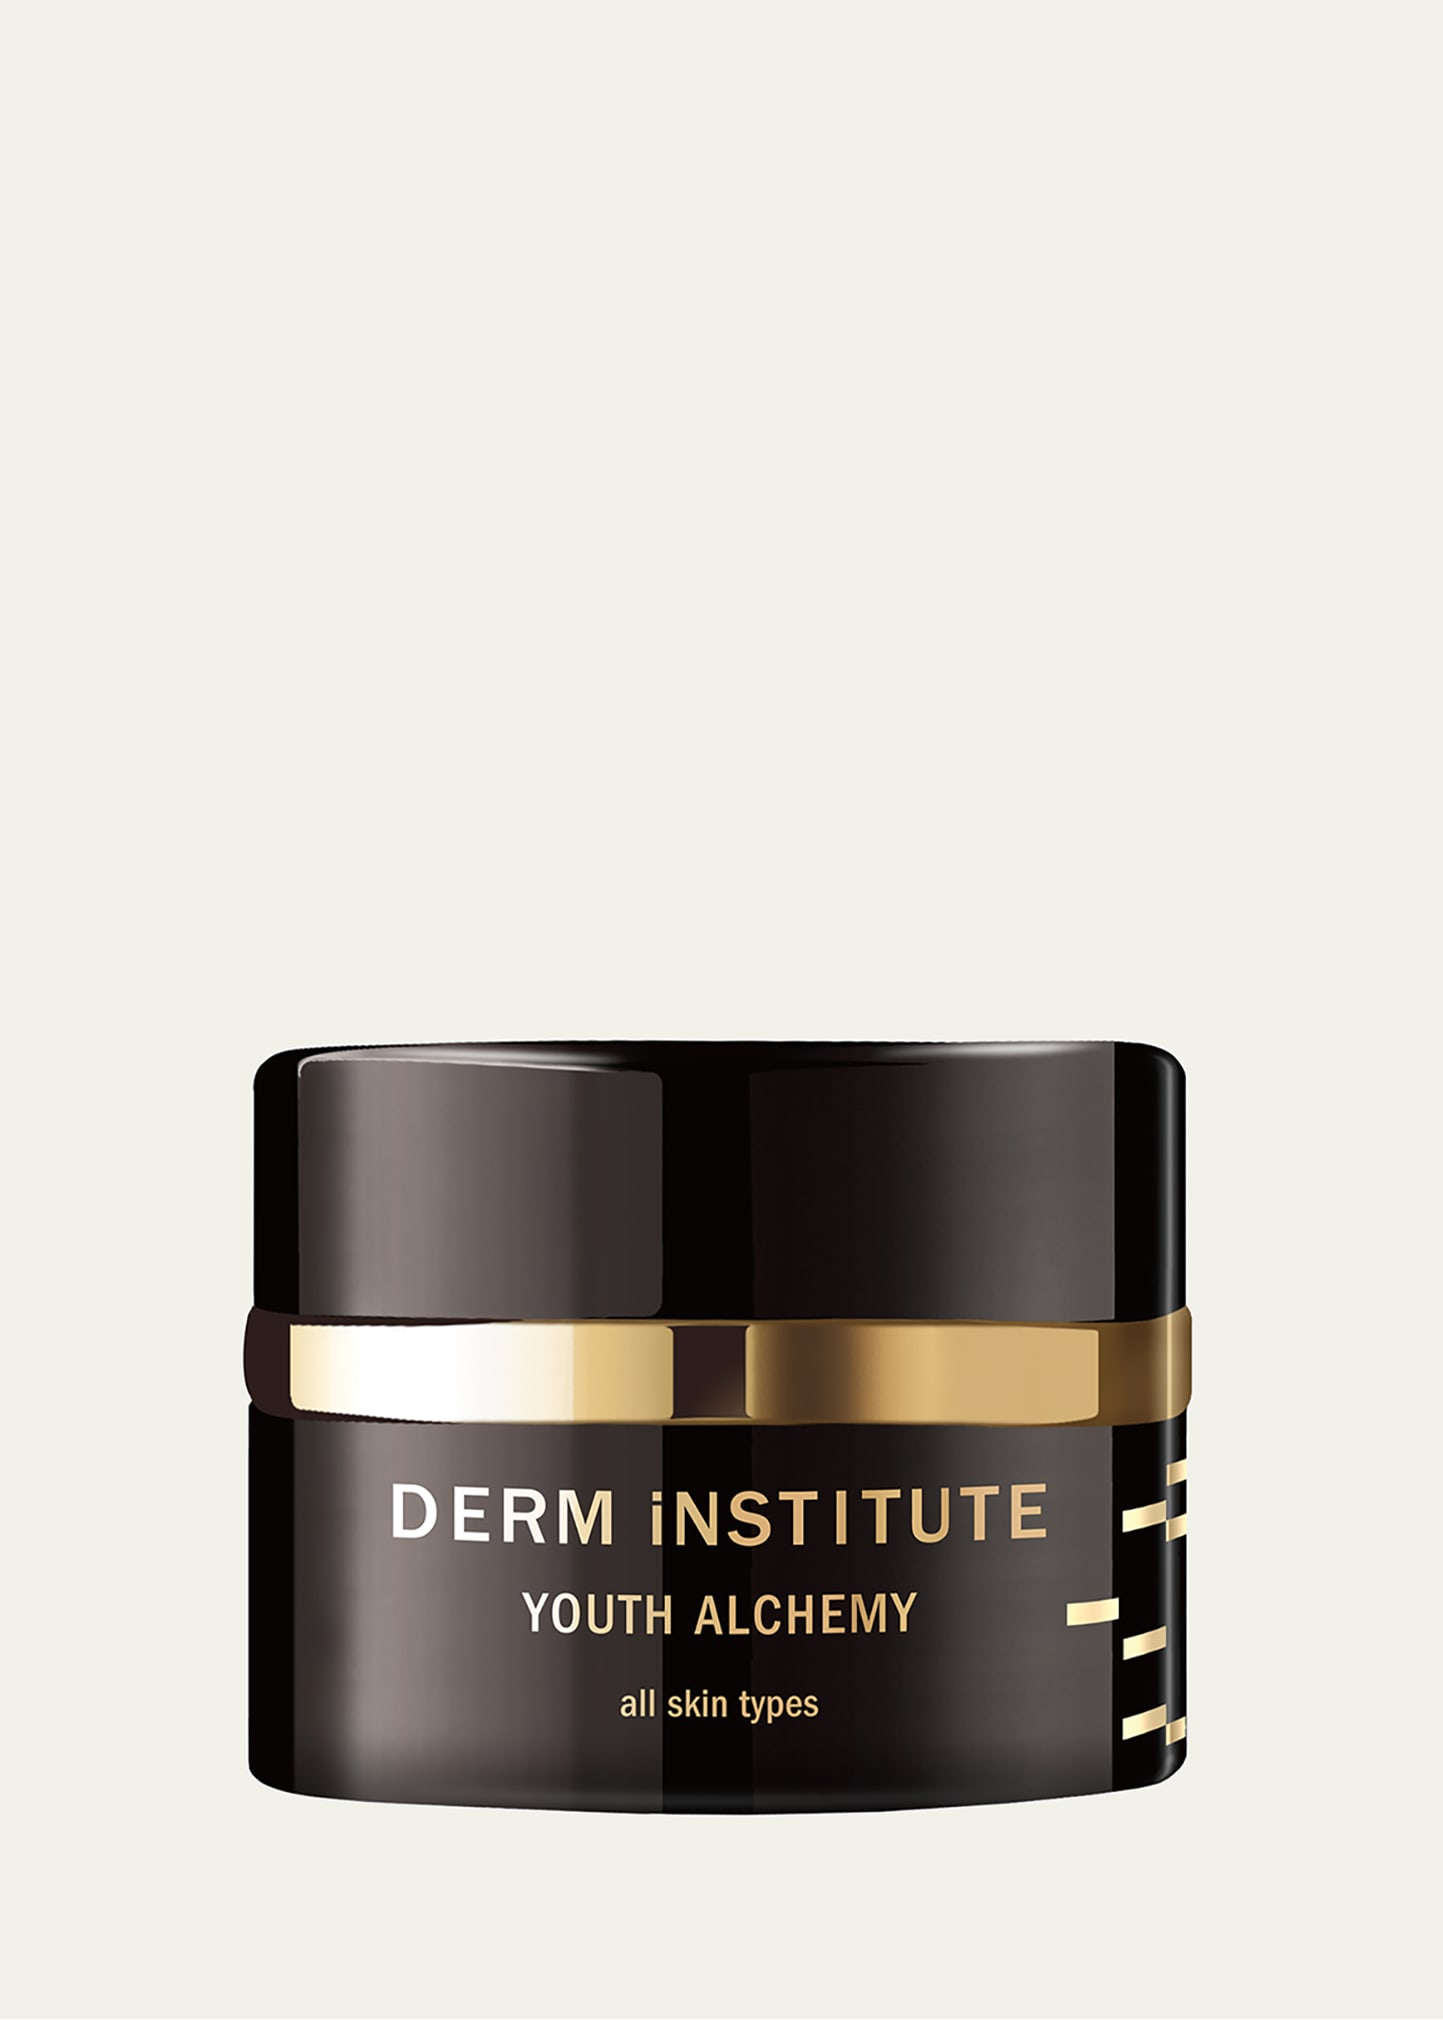 DERM INSTITUTE 1 oz. Youth Alchemy Cream